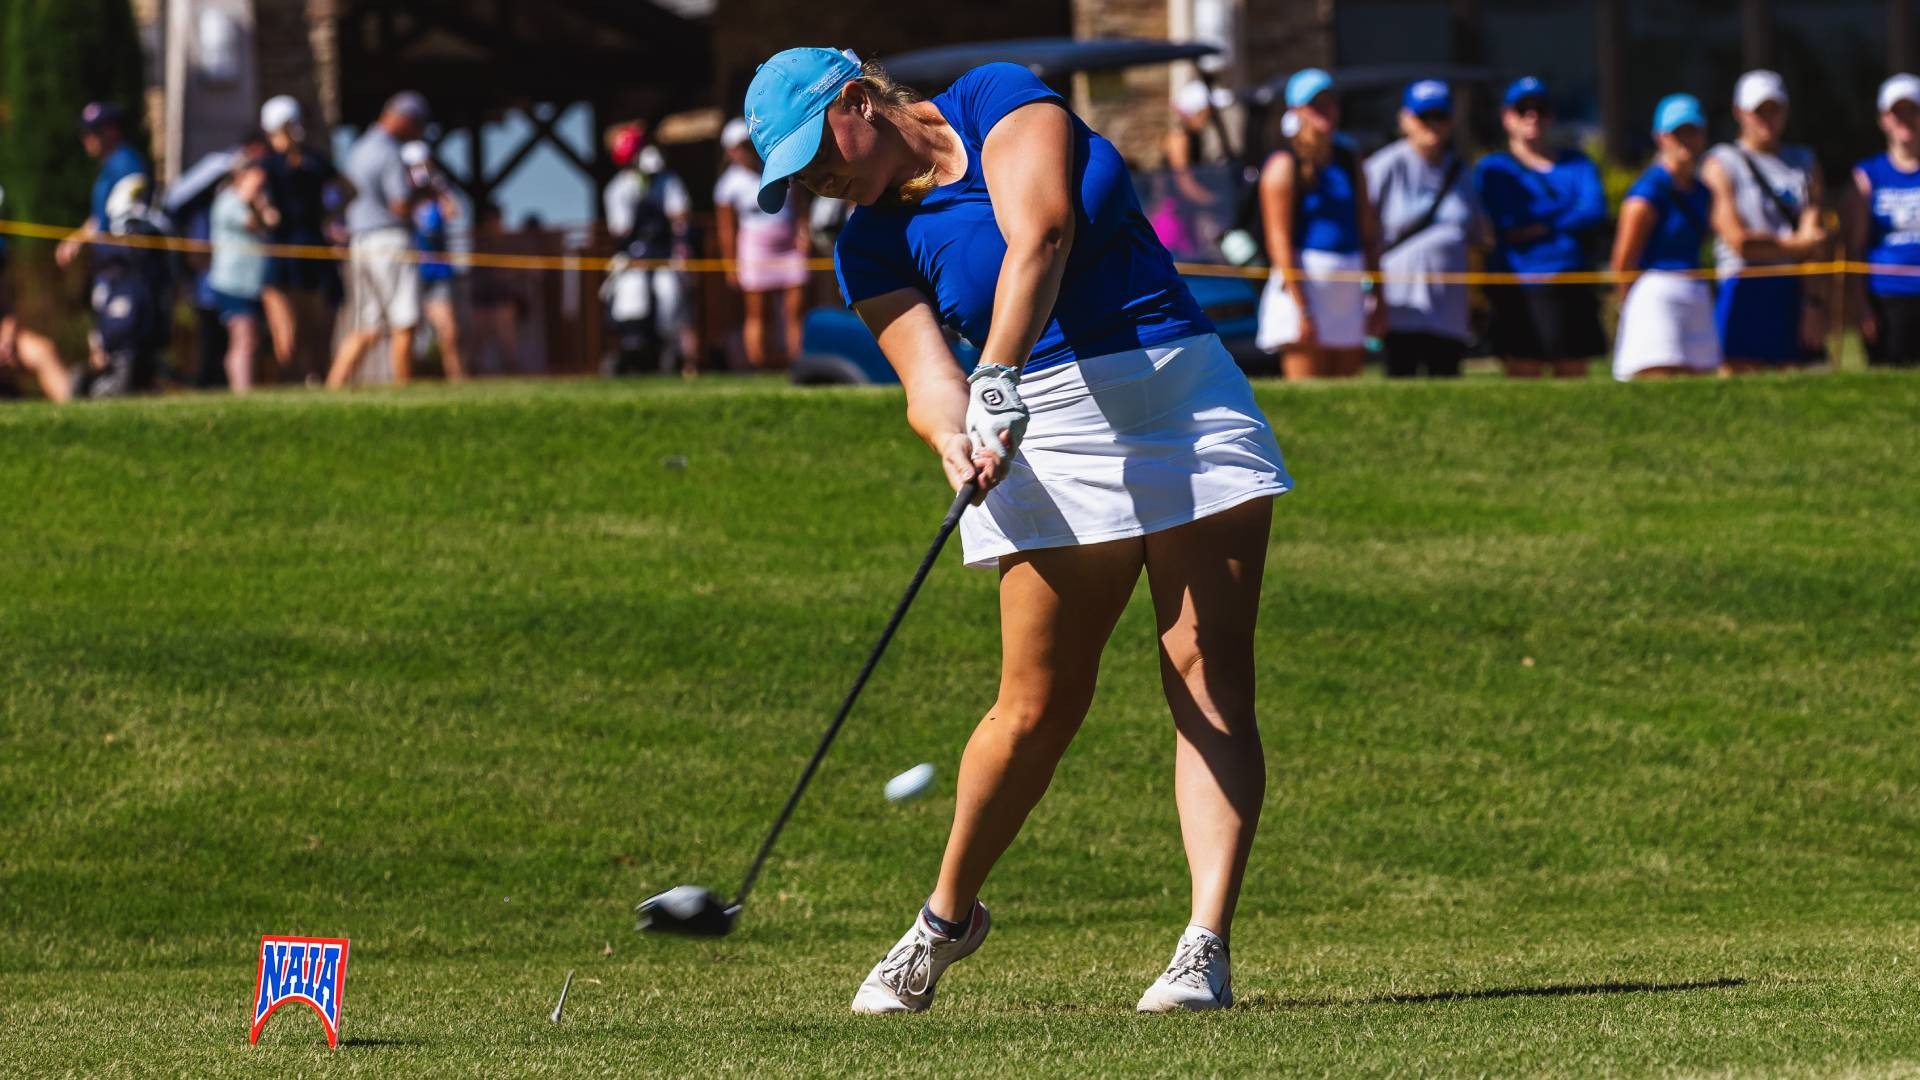 Maddi Kamas of Oklahoma City Named NAIA Women's Golfer of the Year